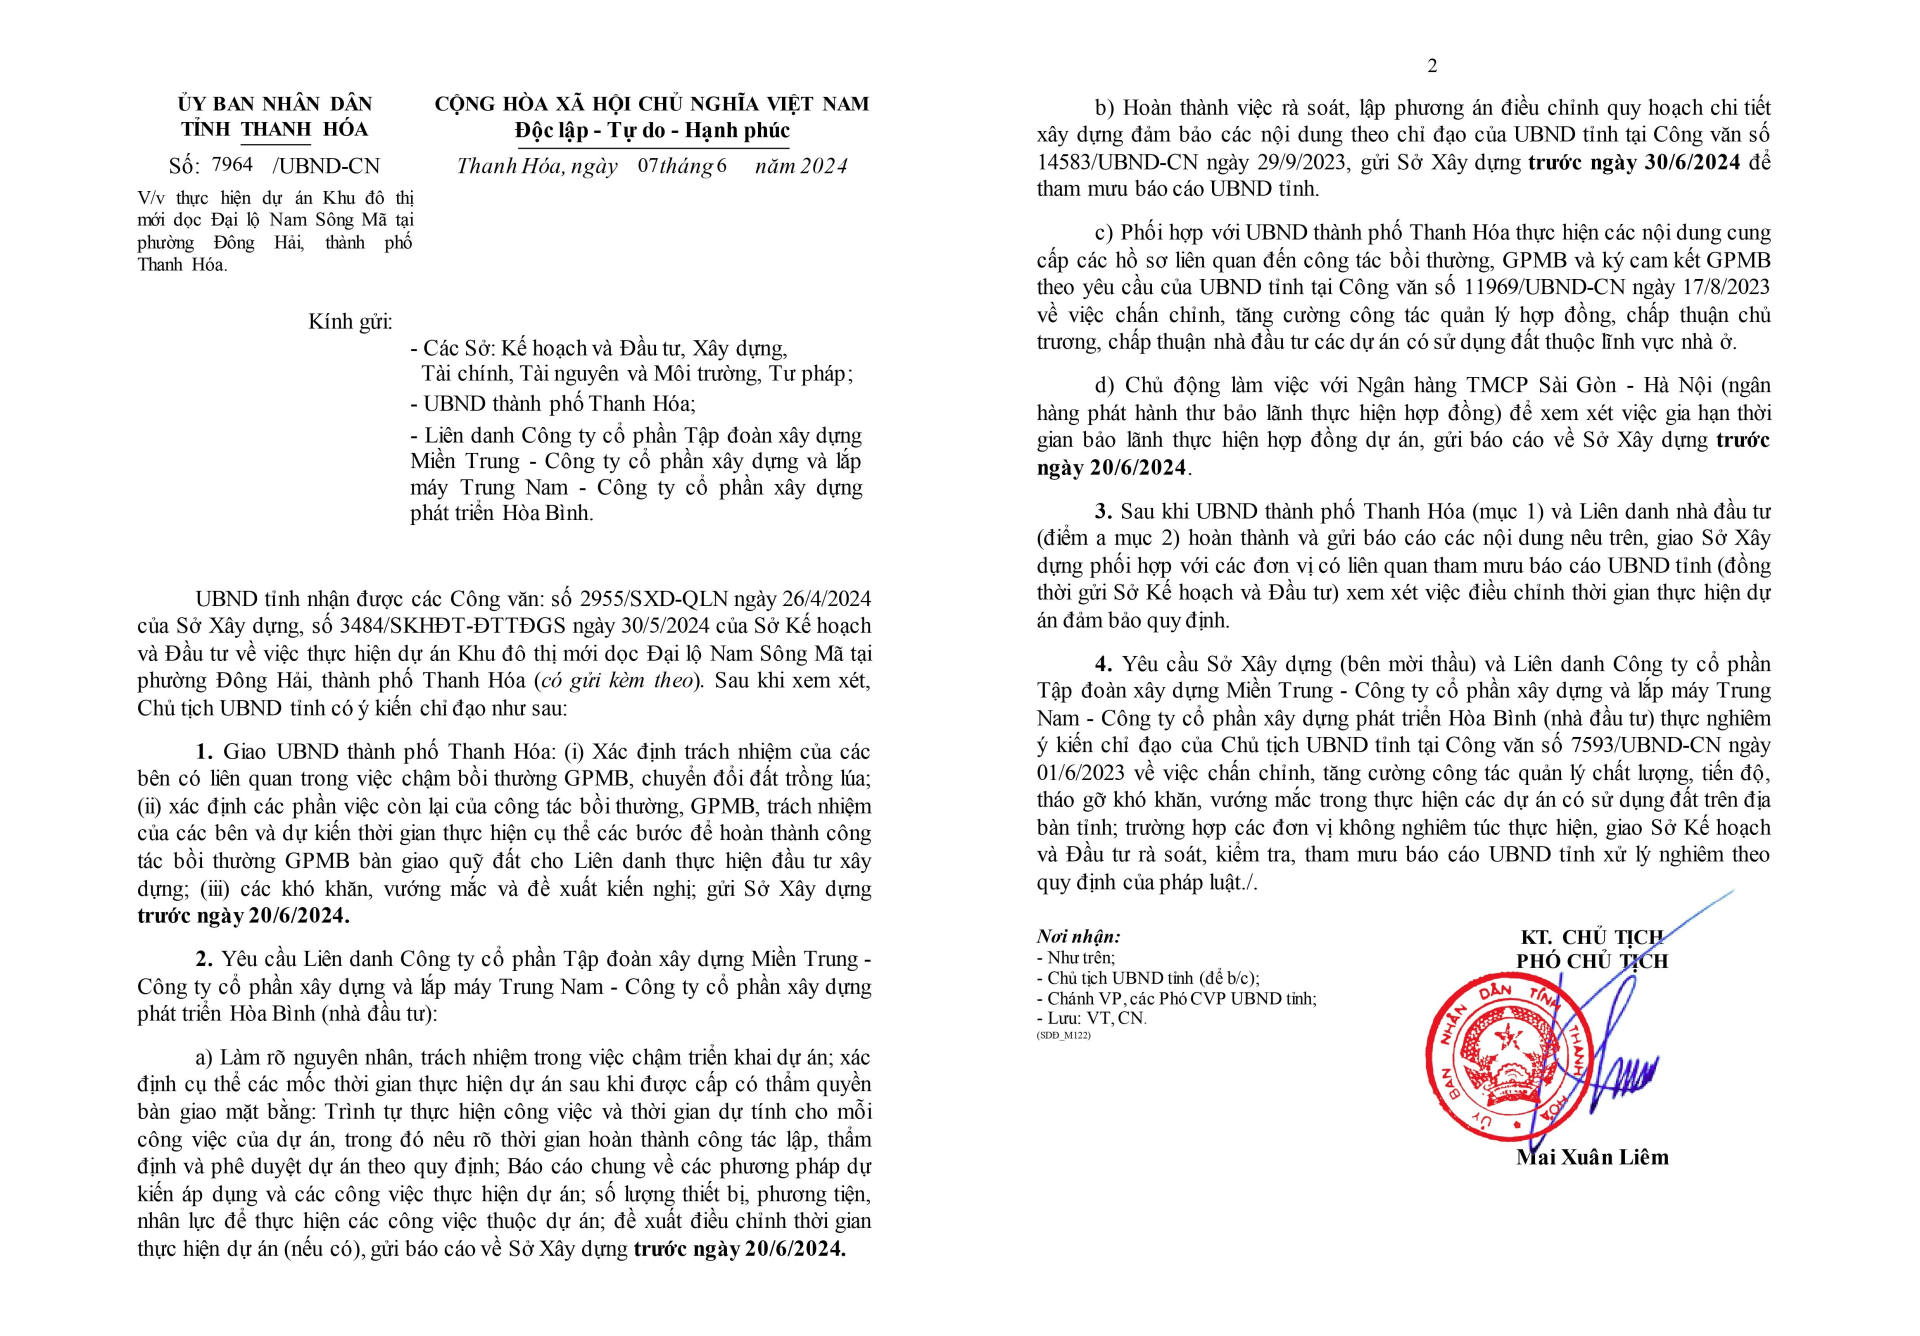 Công văn chỉ đạo số 7964 của UBND tỉnh Thanh Hoá.